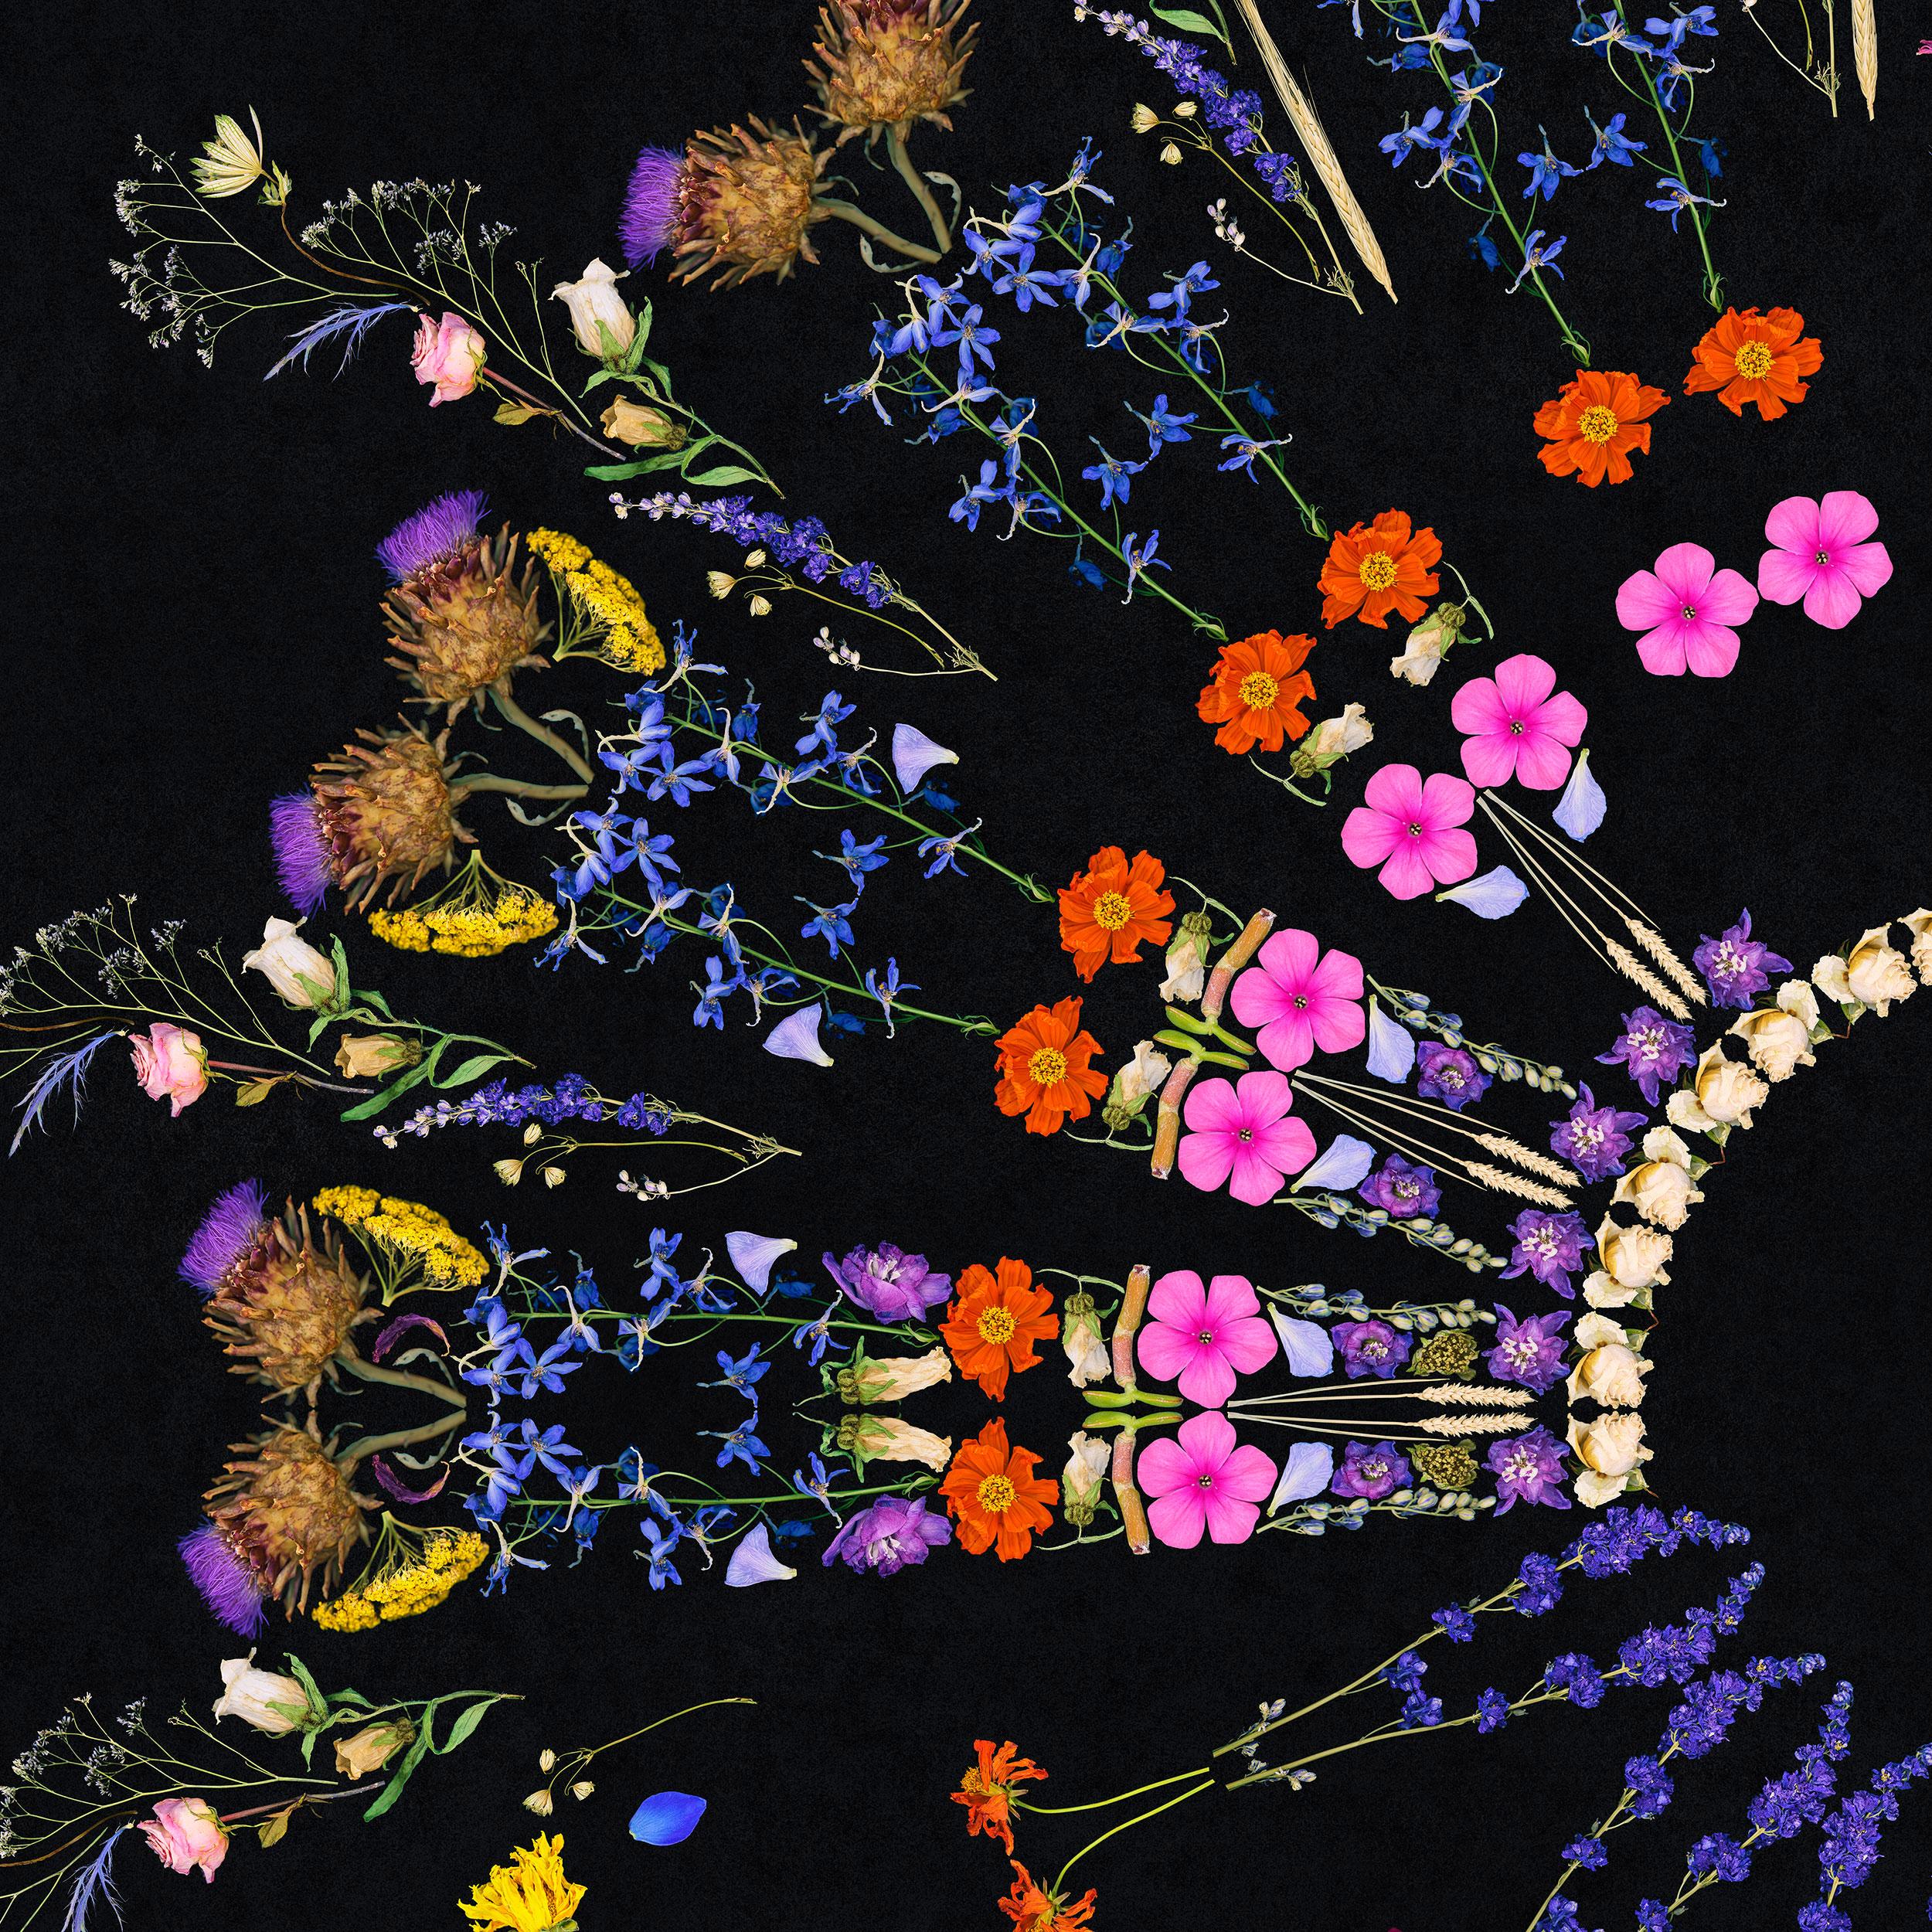 Florist, Mandala - Collage aus toten Blumen – Photograph von George McLeod